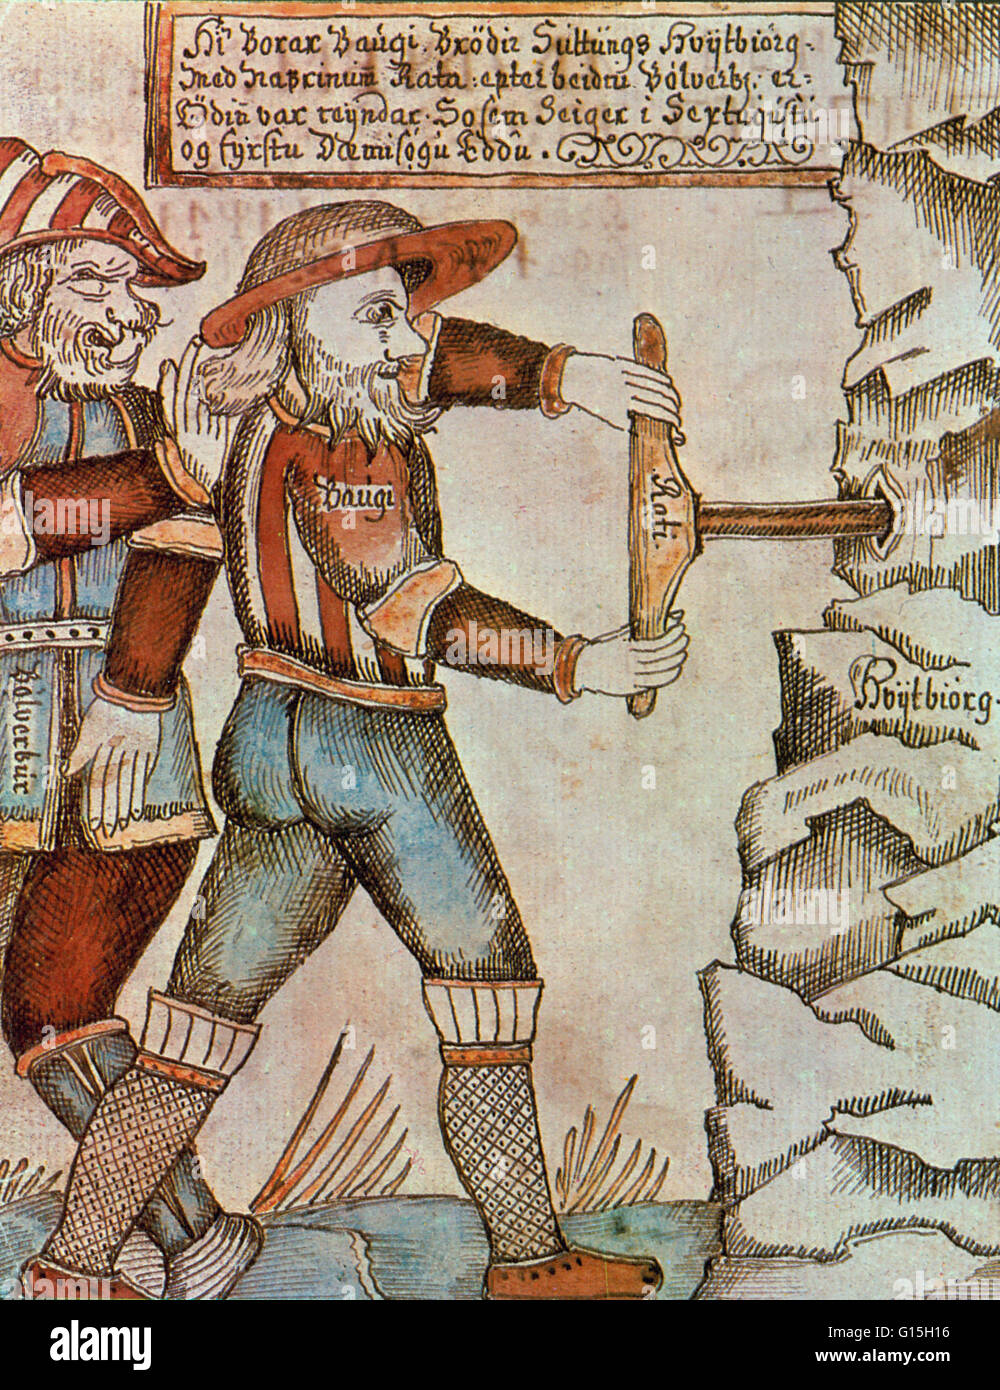 La figure mythologique norrois exercices Baugi sur la montagne pour permettre à Odin, un dieu, d'obtenir un SIP de l'ead de la poésie "qui y sont cachés. Illustration à partir d'un 18e siècle manuscrit islandais. Banque D'Images